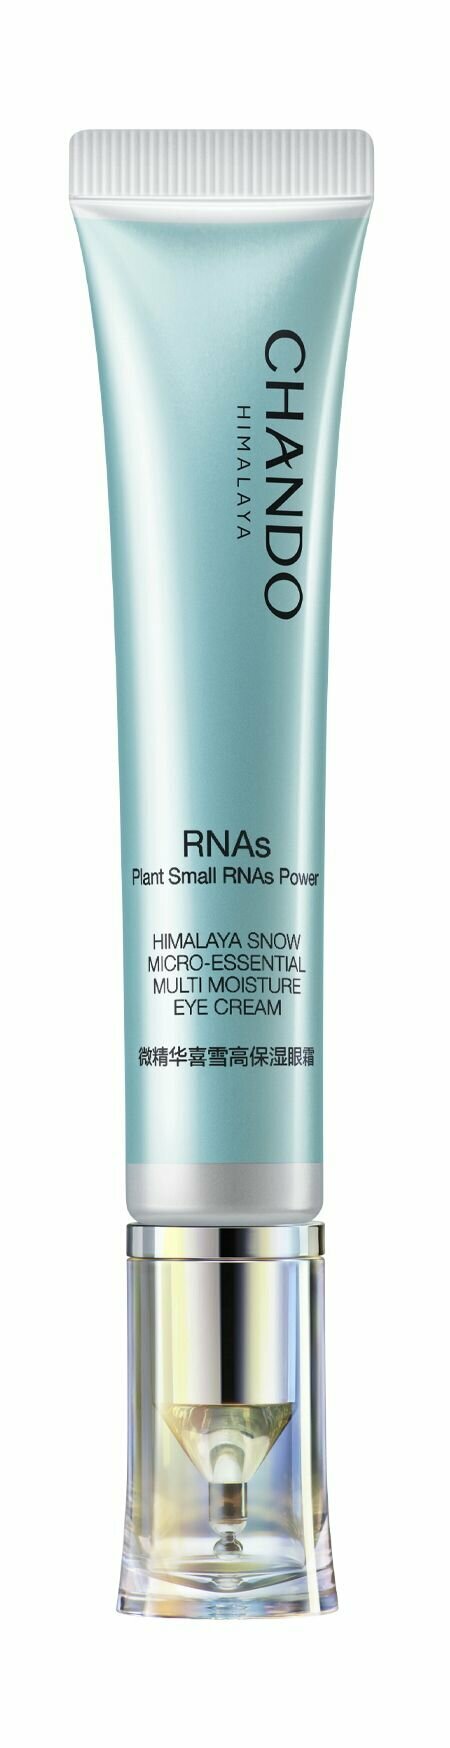 Увлажняющий крем для области вокруг глаз с экстрактом гималайского укропа / Chando Himalaya Plants Small RNAs Power Eye Cream